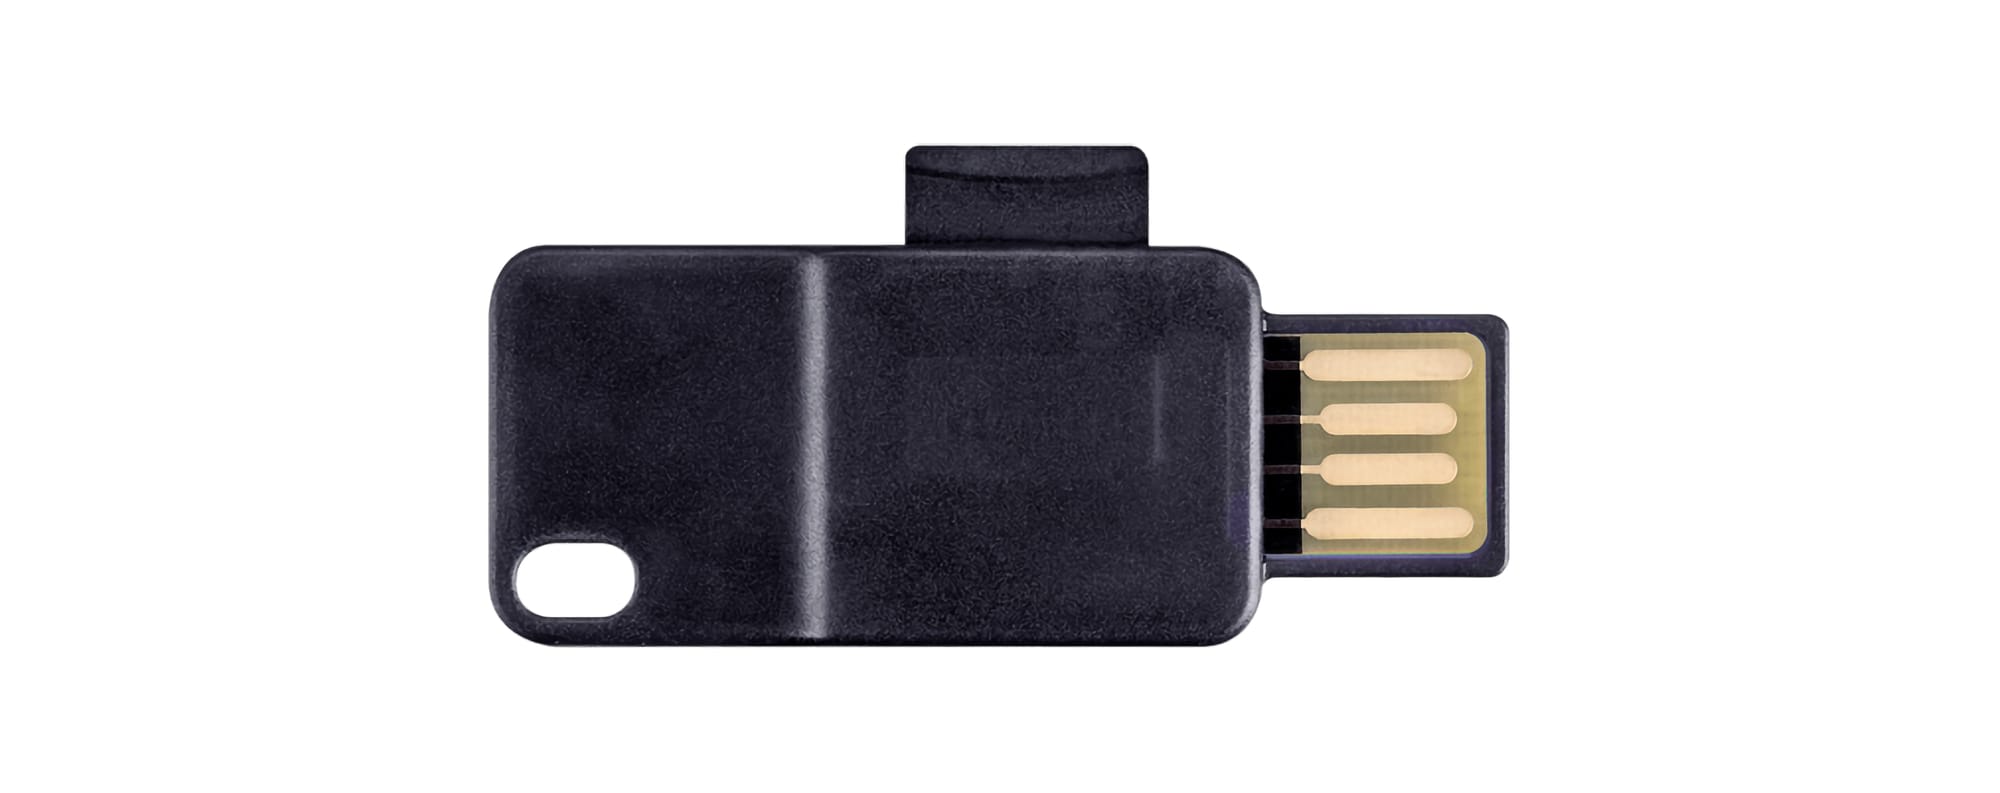 Warum Backups auf microSD-Karten nicht verschlüsselt werden sollten